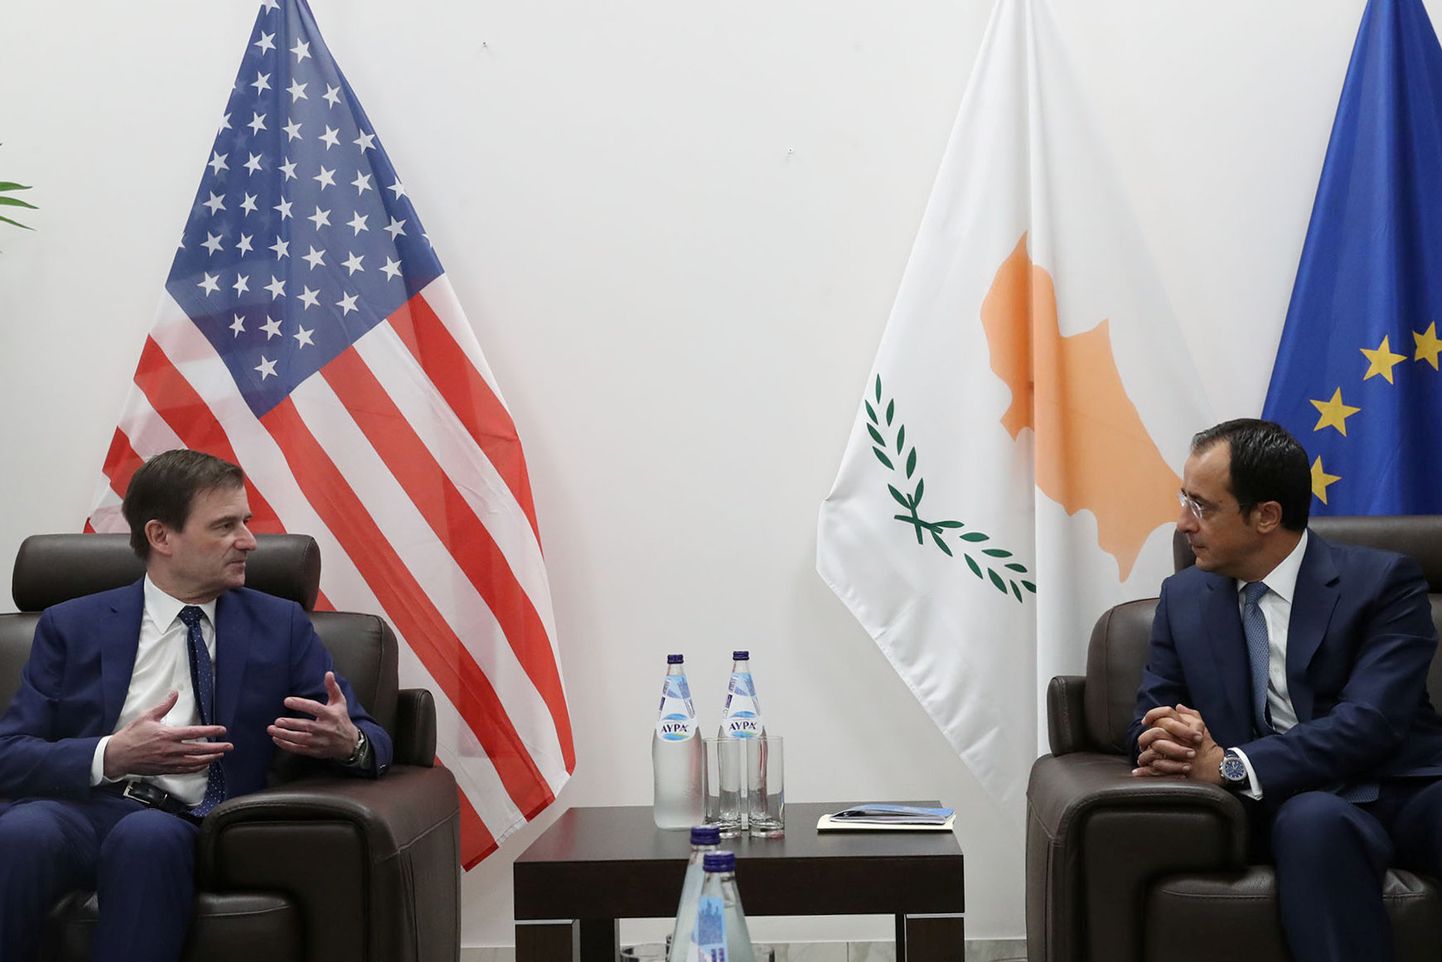 Küprose välisminister Nikos Christodoulides ja USA välisministeeriumi tippametniku David Hale kohtumine paar päeva tagasi.